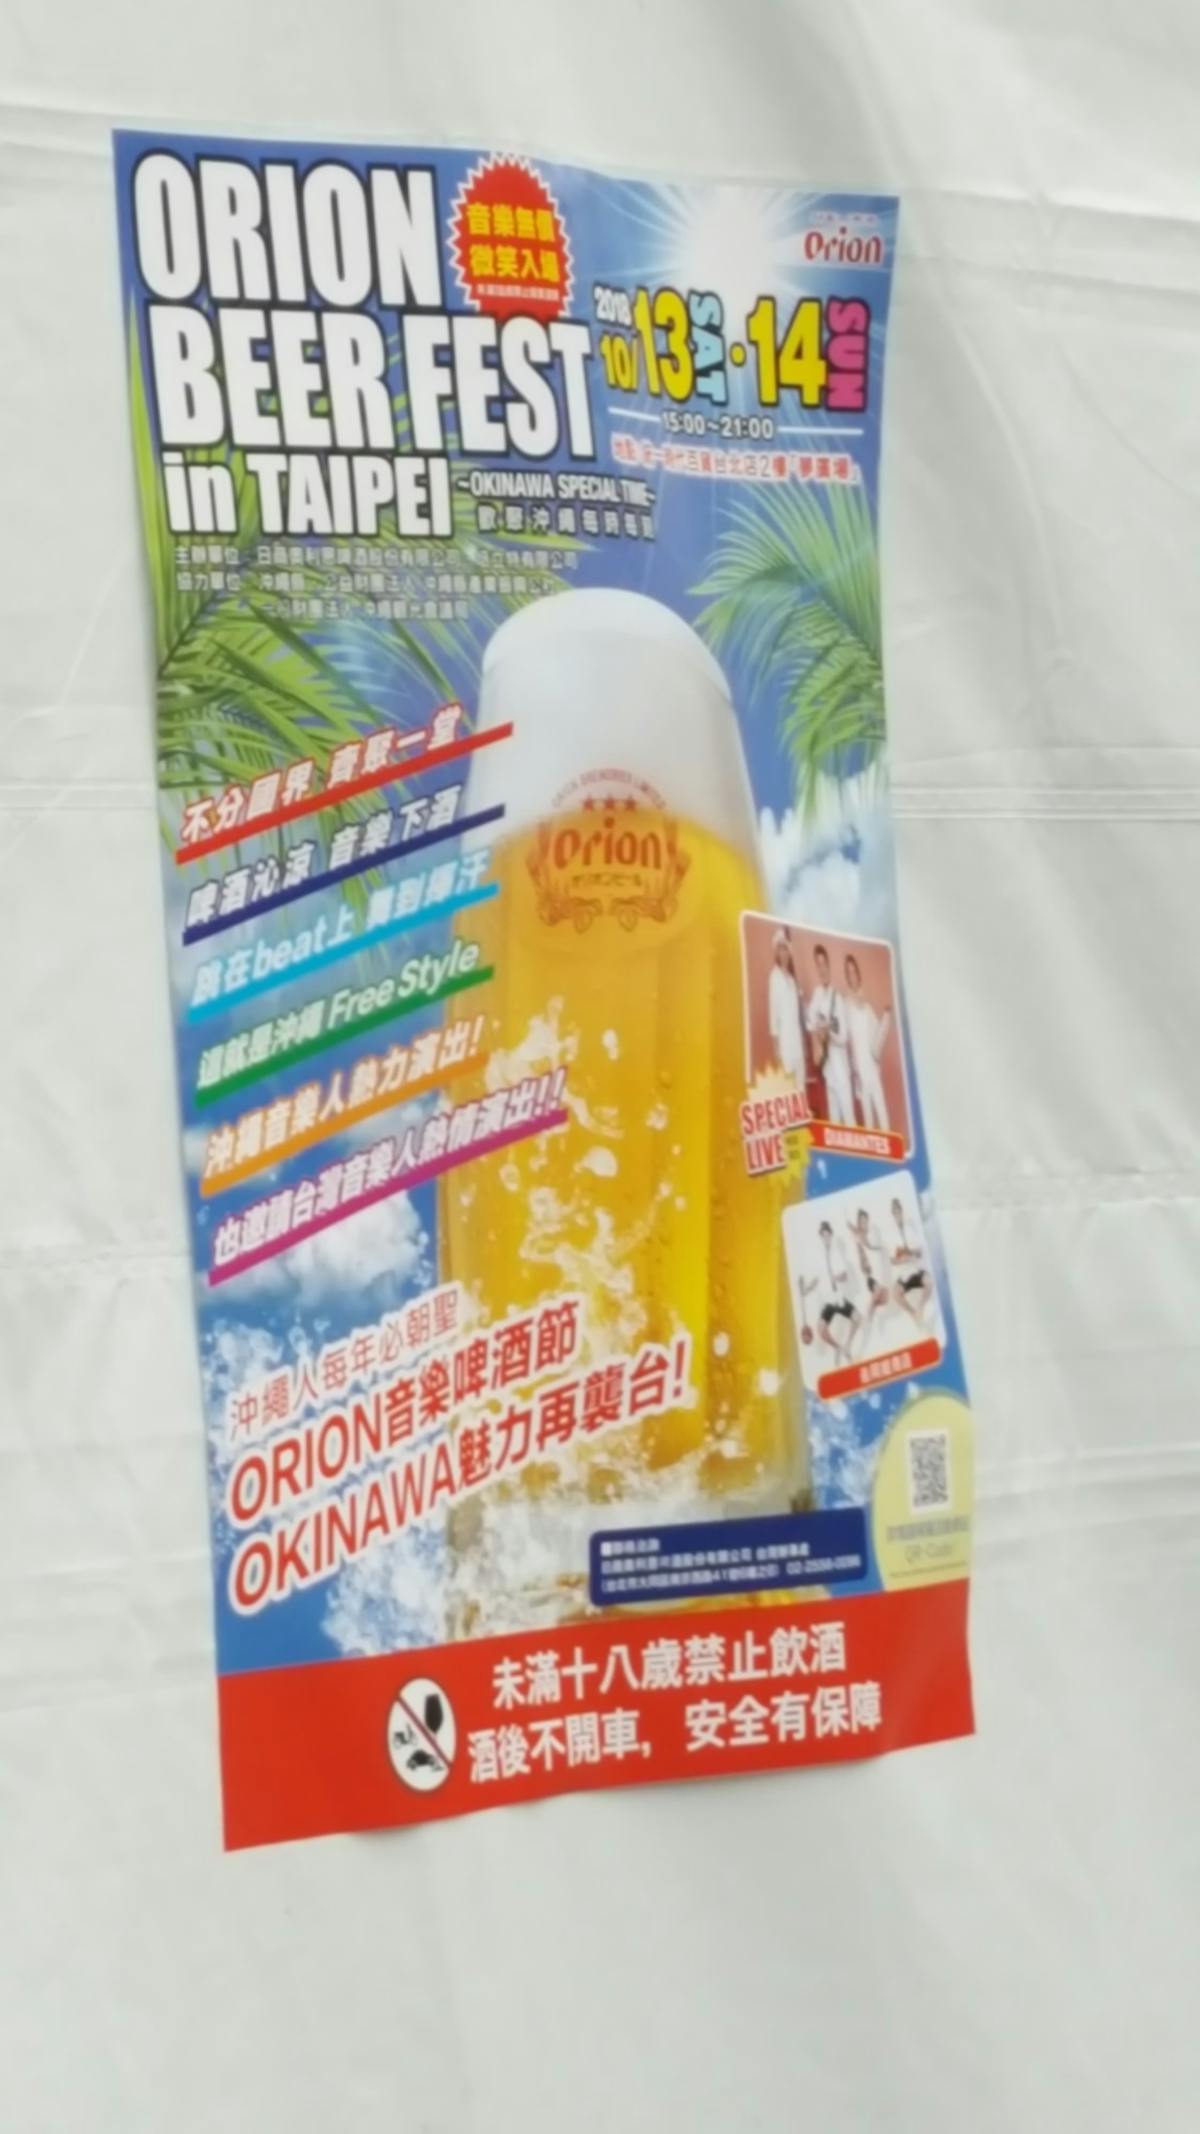 オリオンビールフェスティバル in 台湾